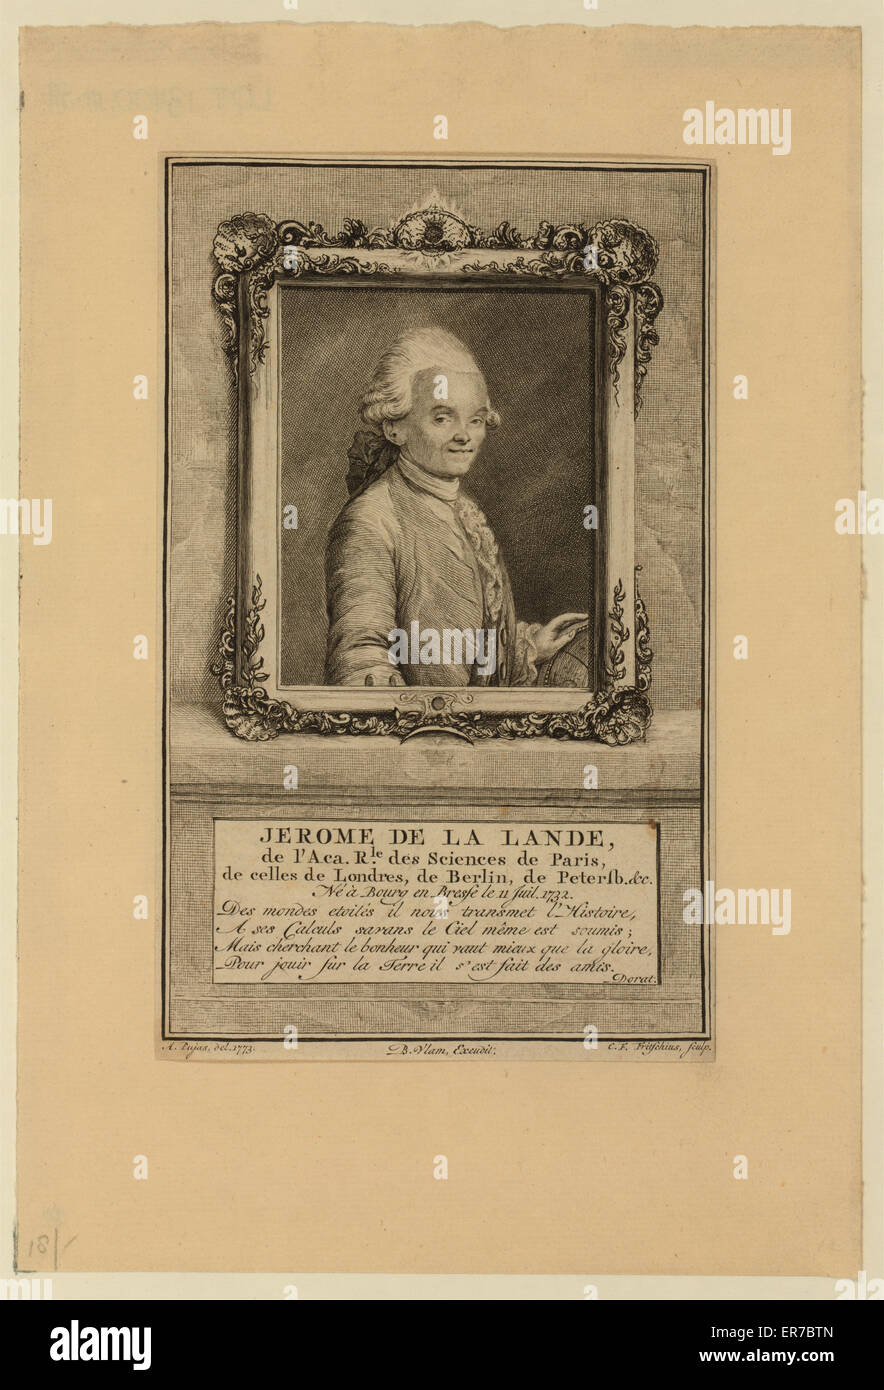 Jerome de La Lande, de l'Aca. rle. Des Sciences de Paris, de Stockfoto